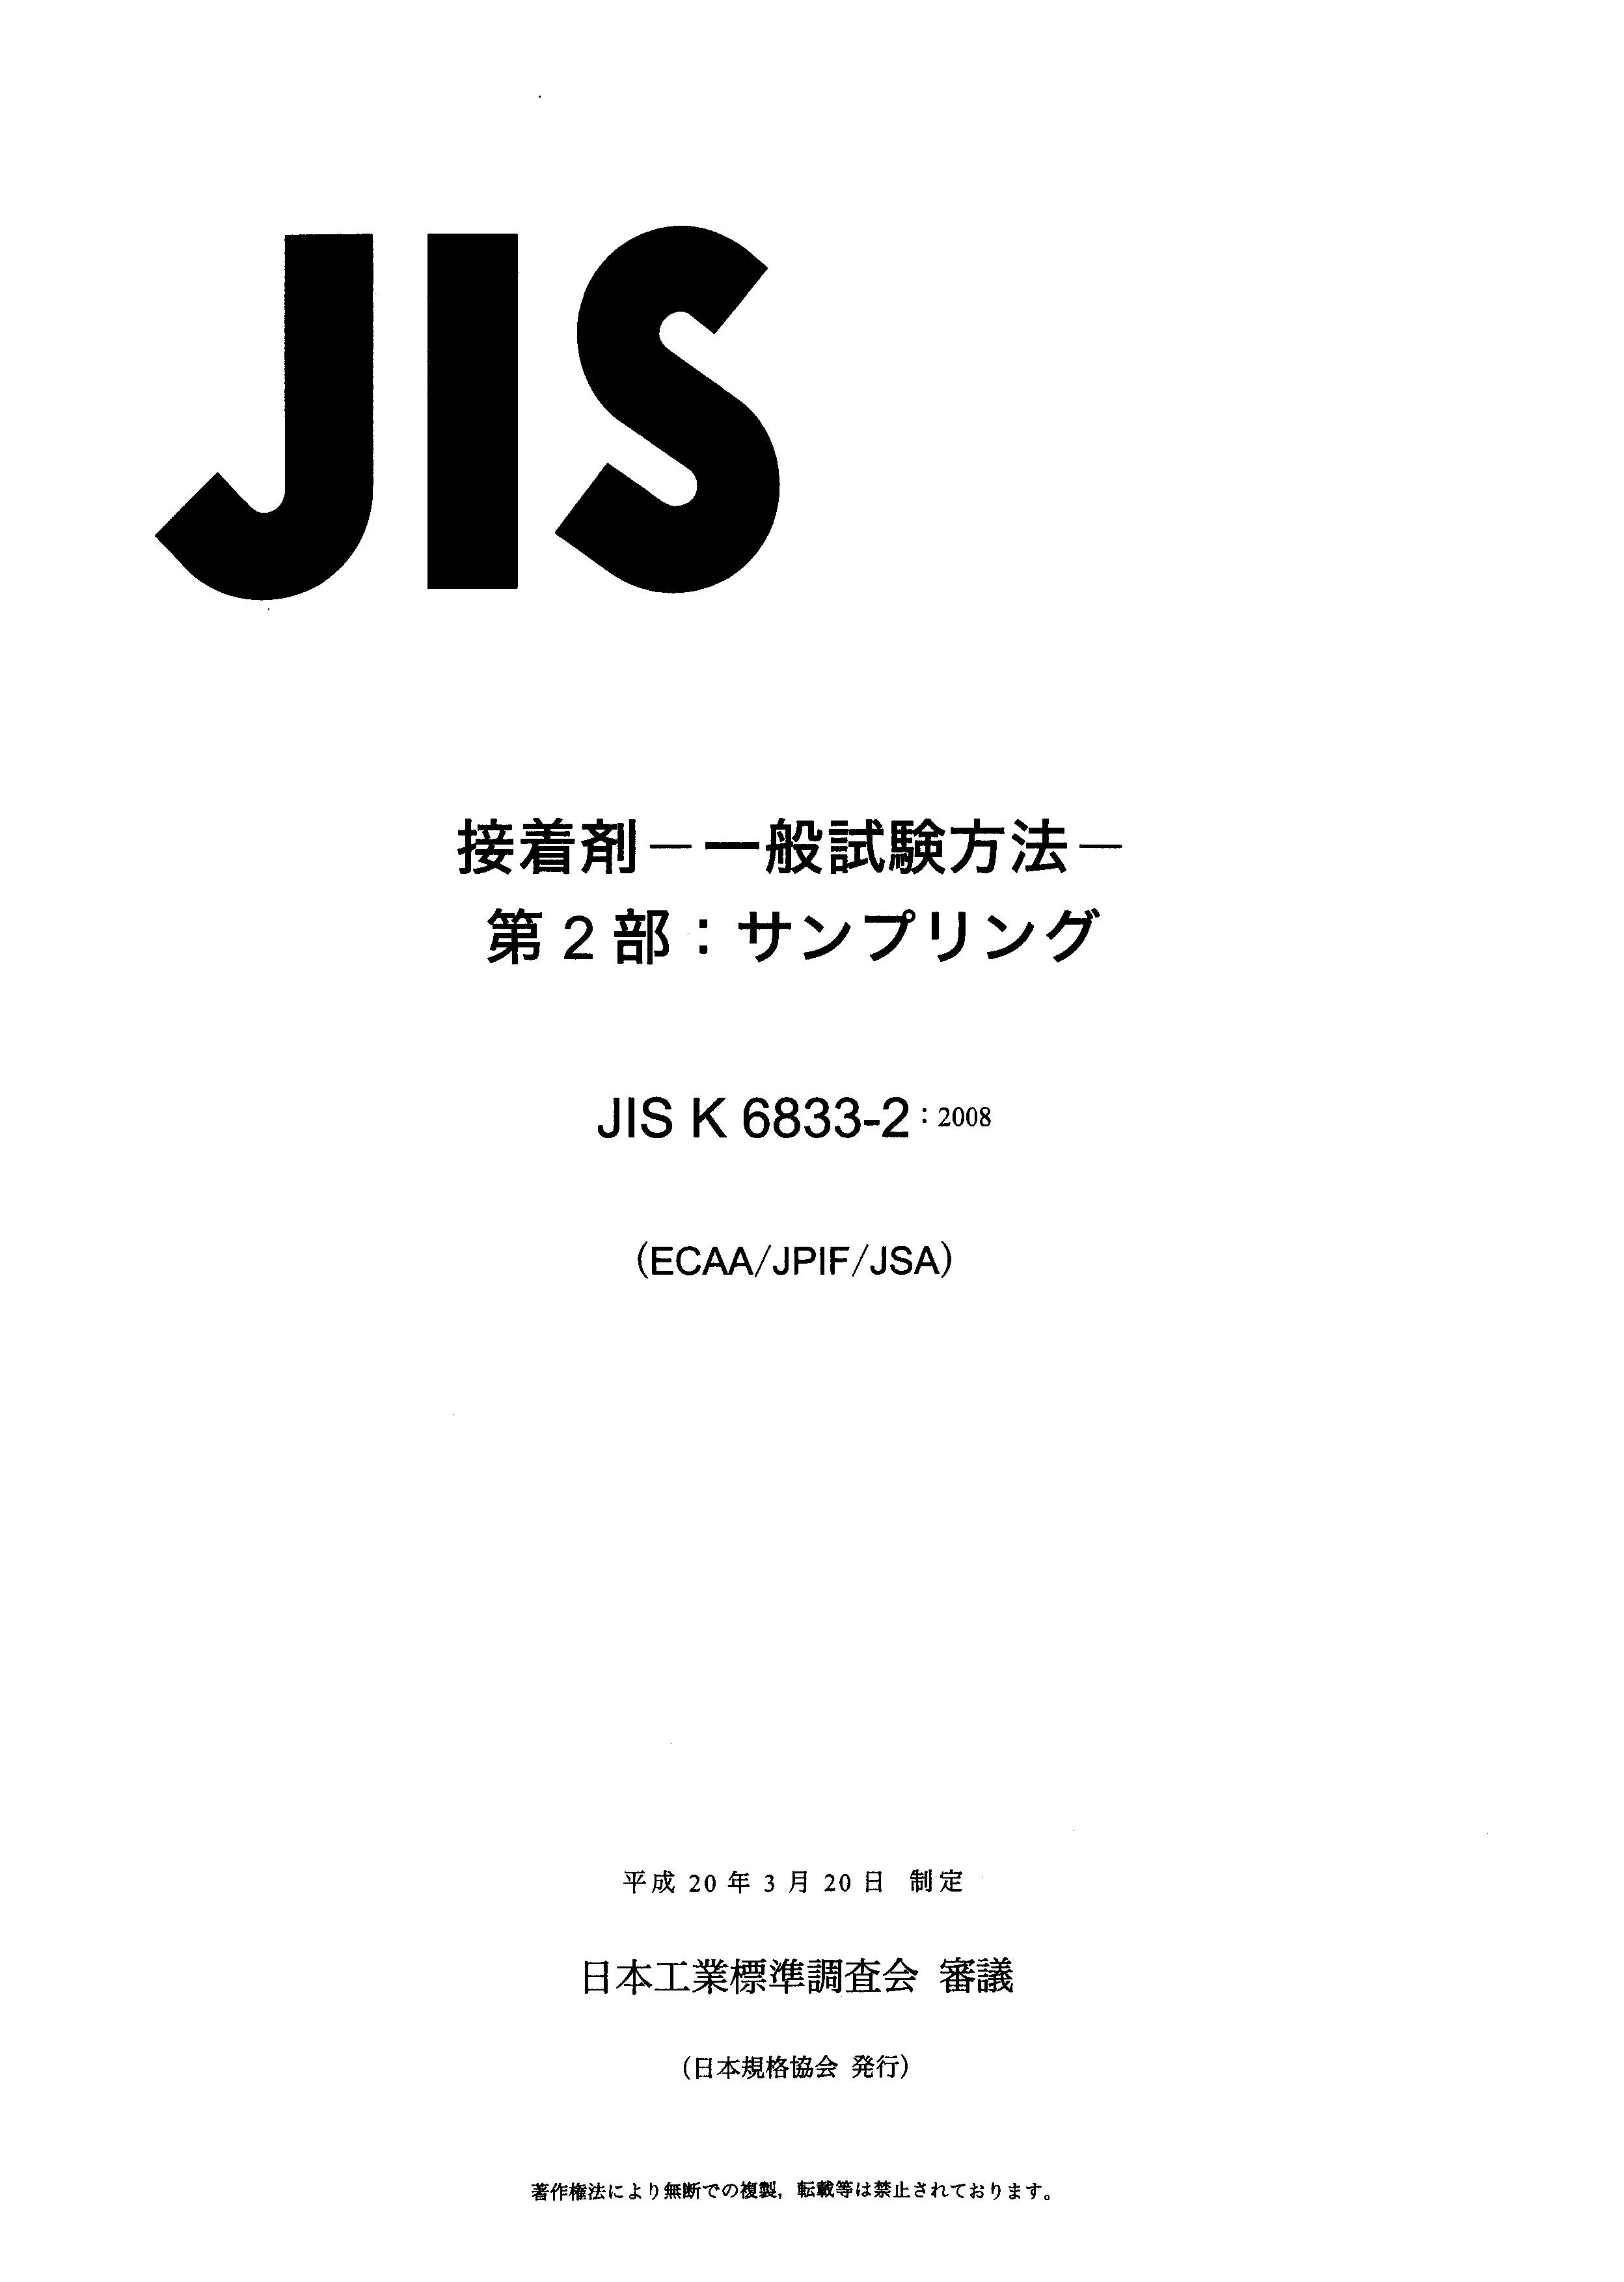 JIS K 6833-2:2008